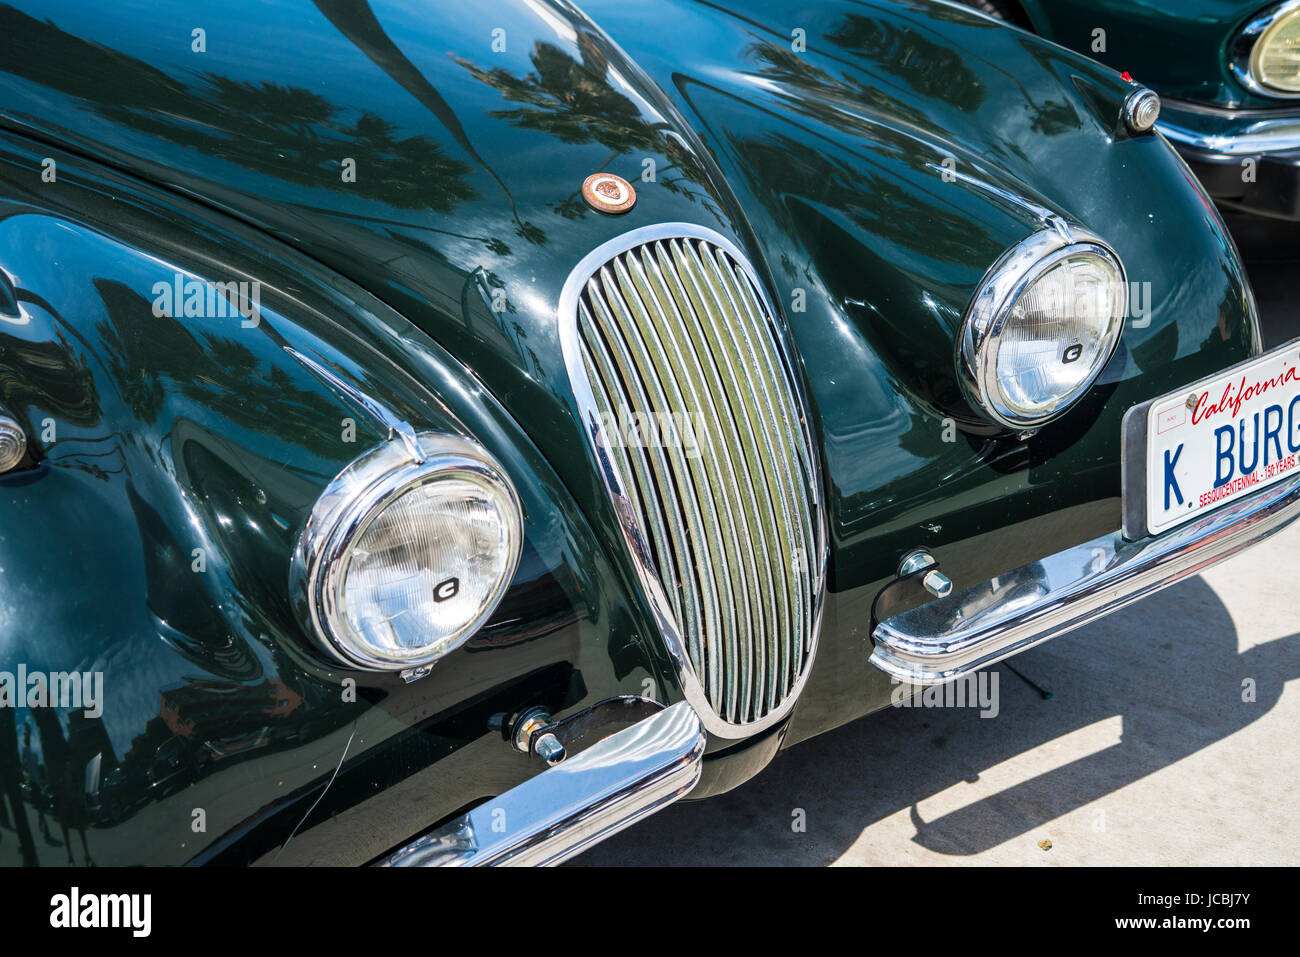 Jaguar anciens at La Jolla Concourse d'élégance car show Banque D'Images